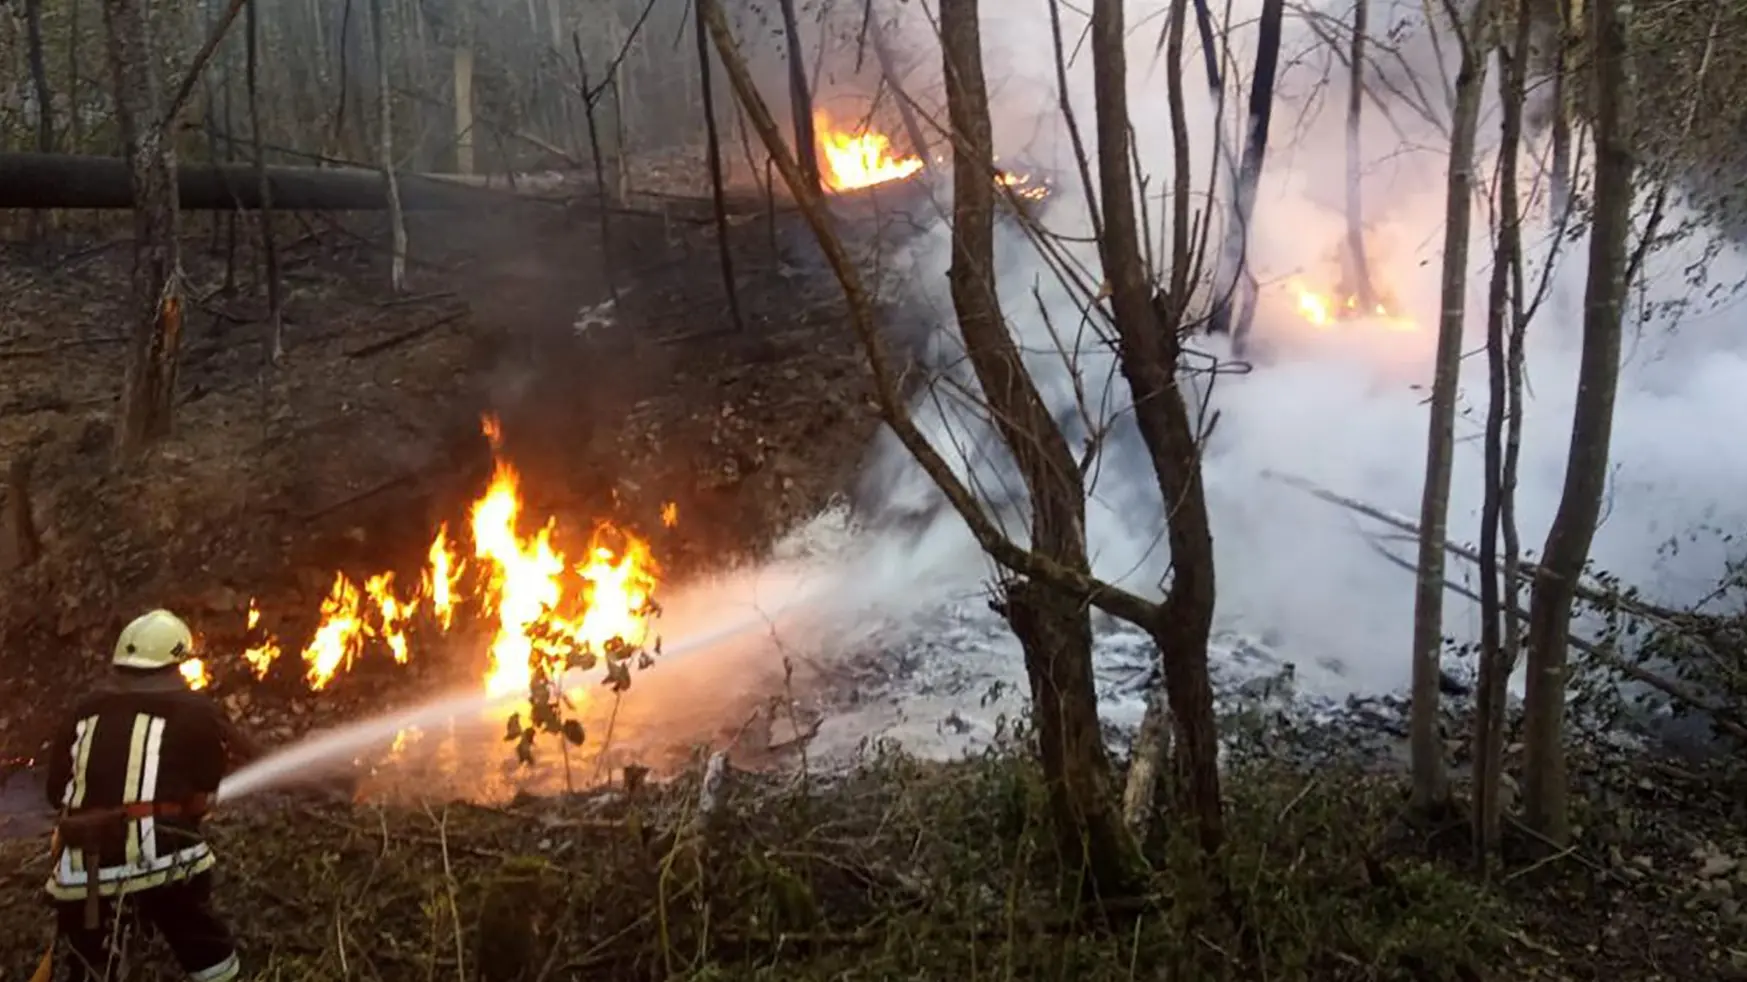 eksplozija naftovod ukrajina profimedia-6518716a90e03.webp